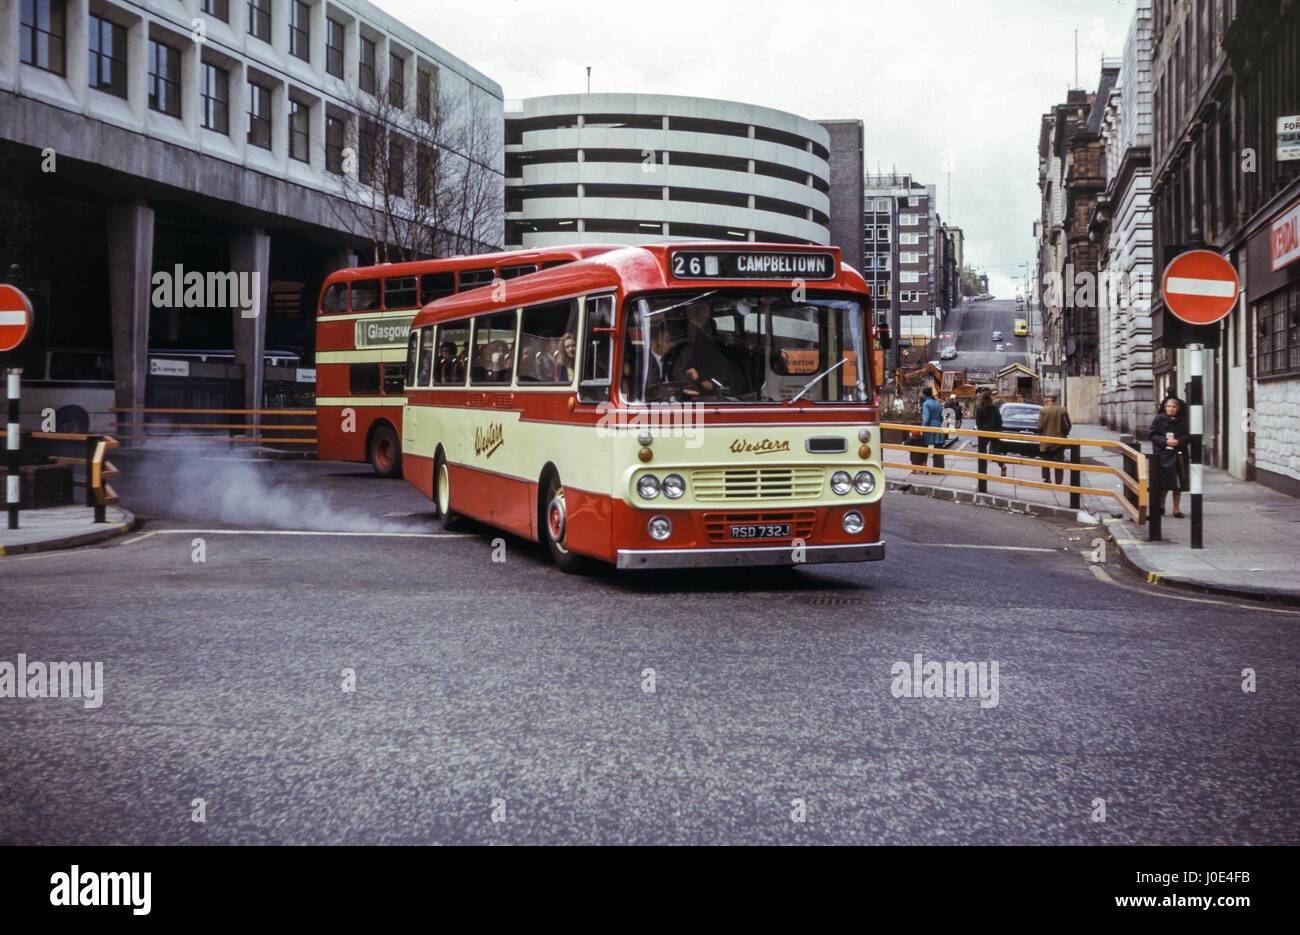 Escocia, Reino Unido - 1973: Vintage imagen de autobús en el centro de Glasgow. SMT occidental Leyland Leopard PSU3/3R con Alexander B53F2341 (número de registro corporal RSD 732J). Foto de stock